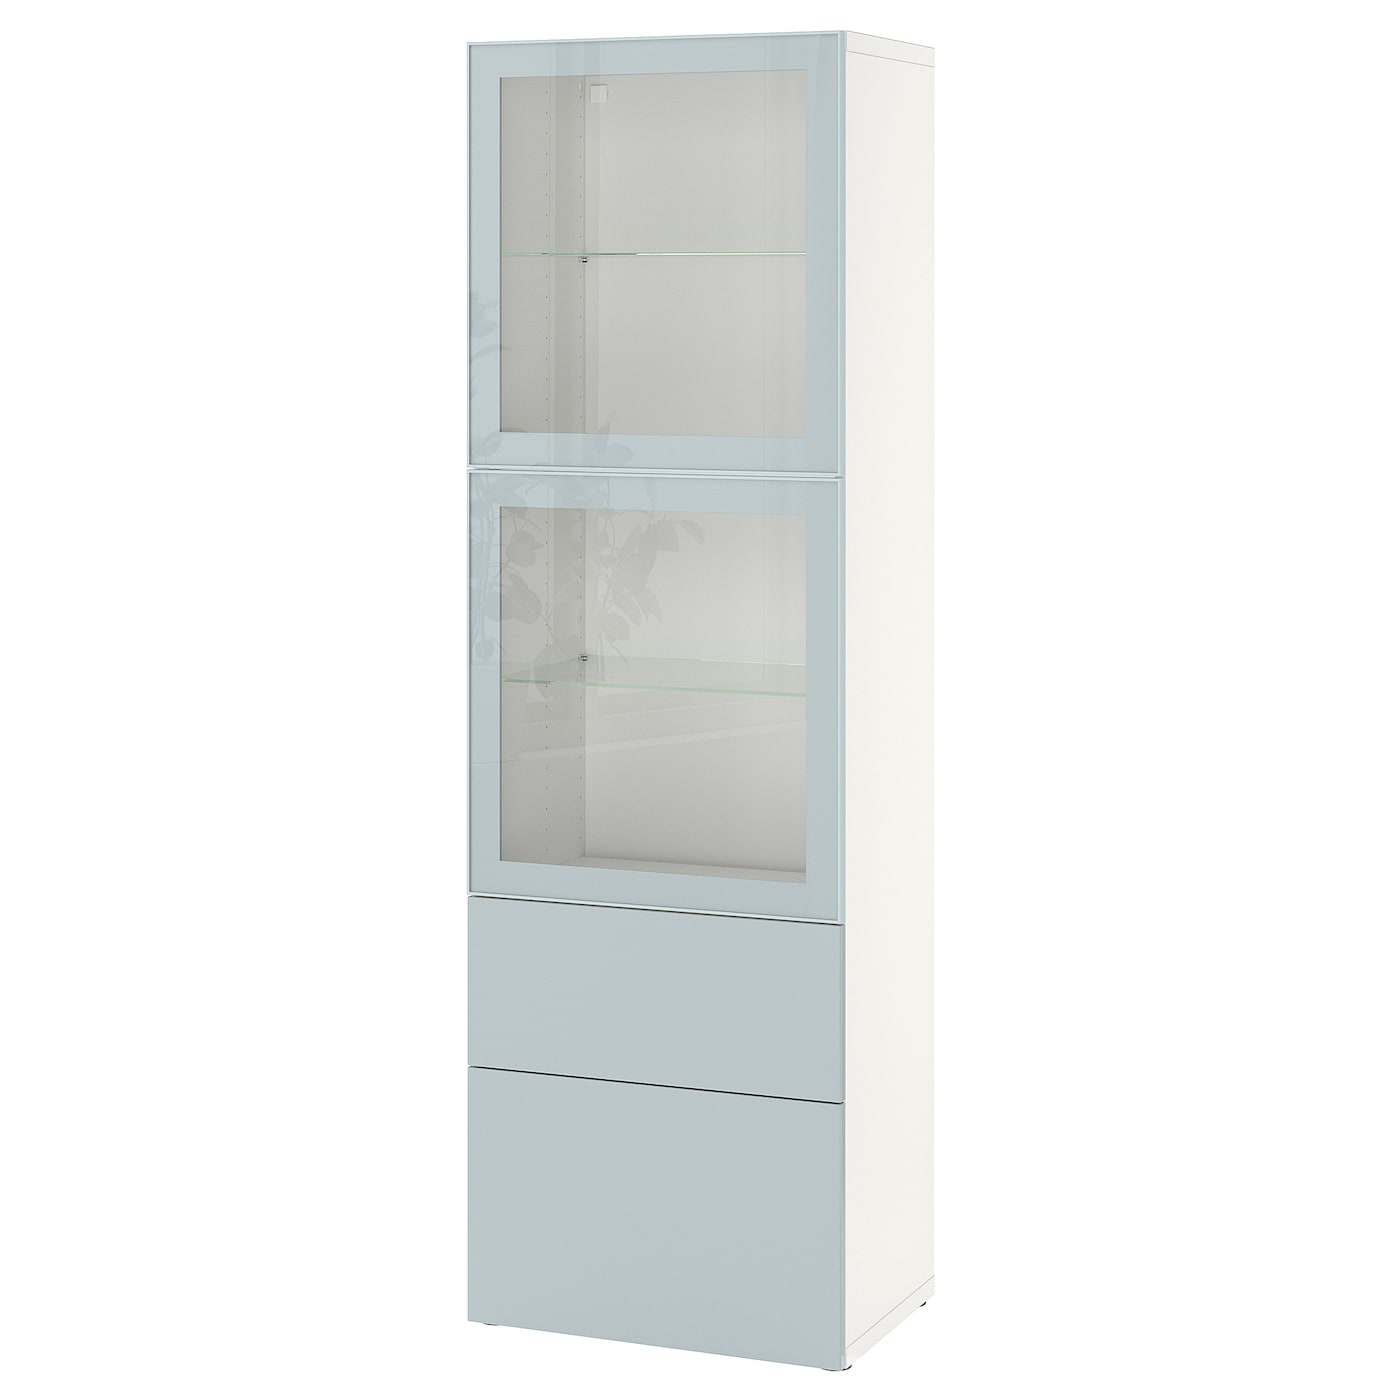 Книжный шкаф - BESTÅ/ BESTА IKEA/ БЕСТА/БЕСТО ИКЕА, 193х60 см, белый/светло-голубой